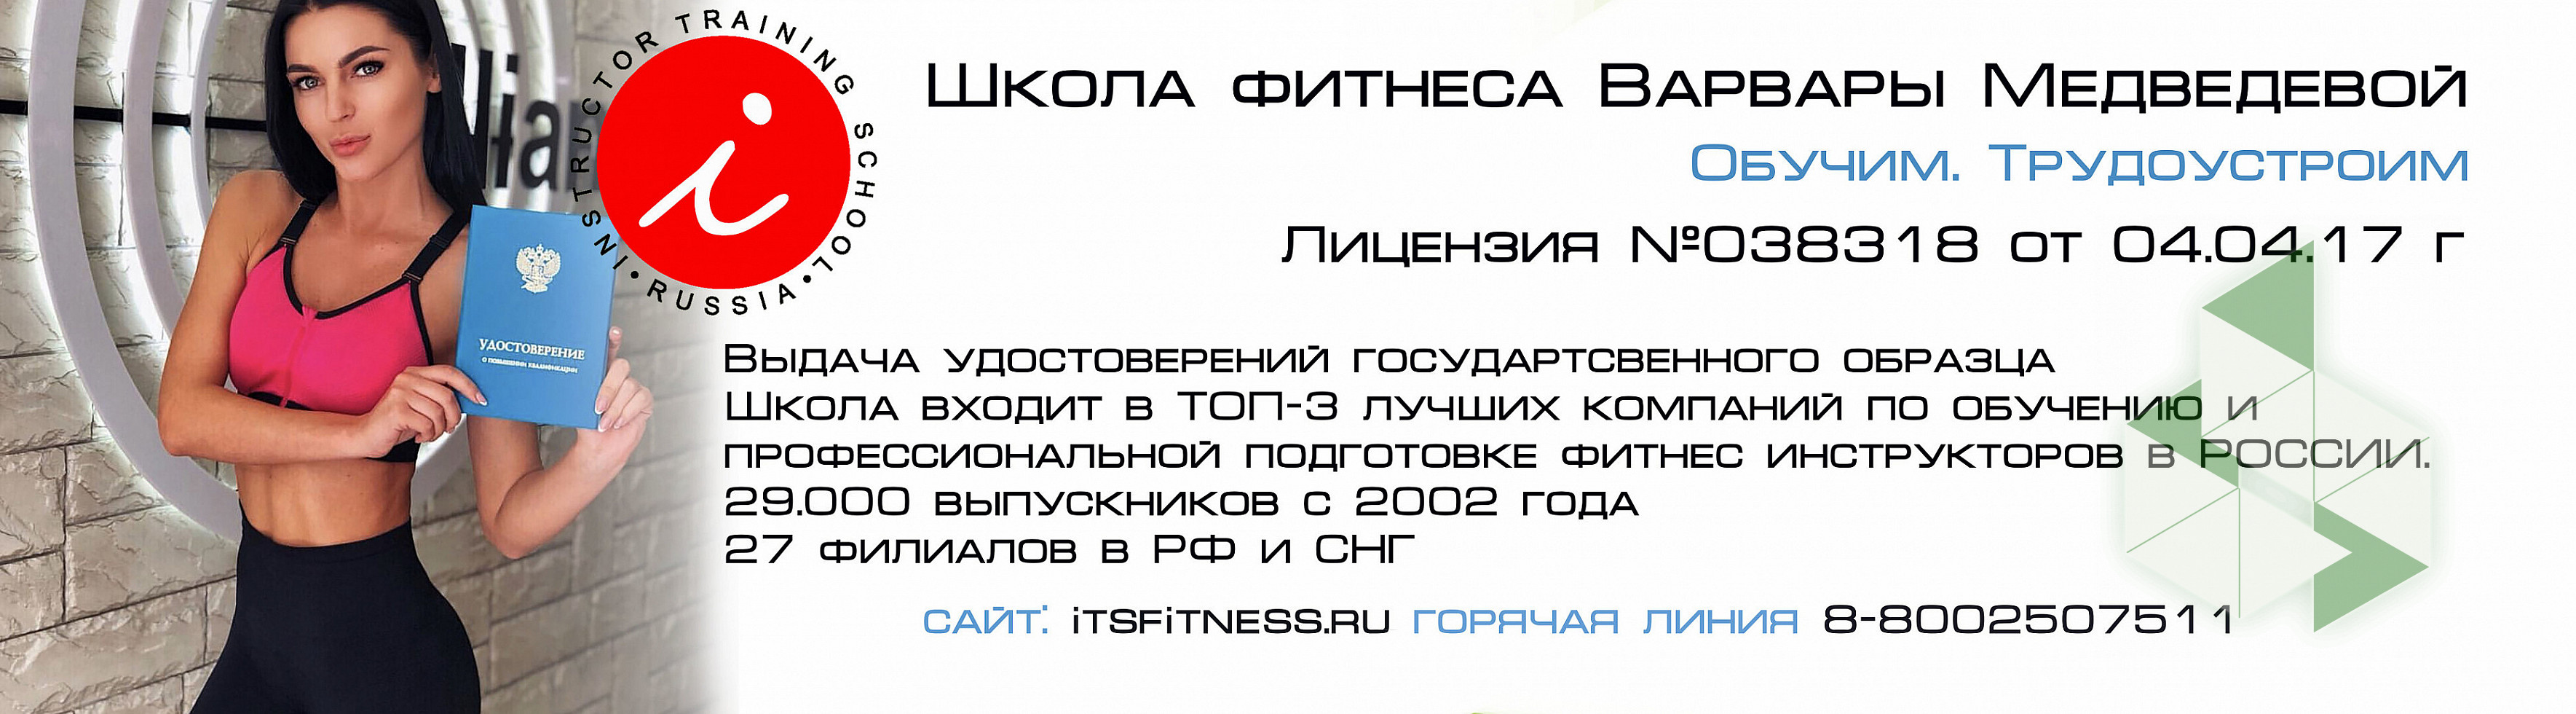 Школа фитнеса Варвары Медведевой (Краснодар): официальный сайт и контакты, фирма "Школа фитнеса Варвары Медведевой " (Краснодар): телефон и адрес, отзывы, часы работы компании на Orghost (ID 922711)